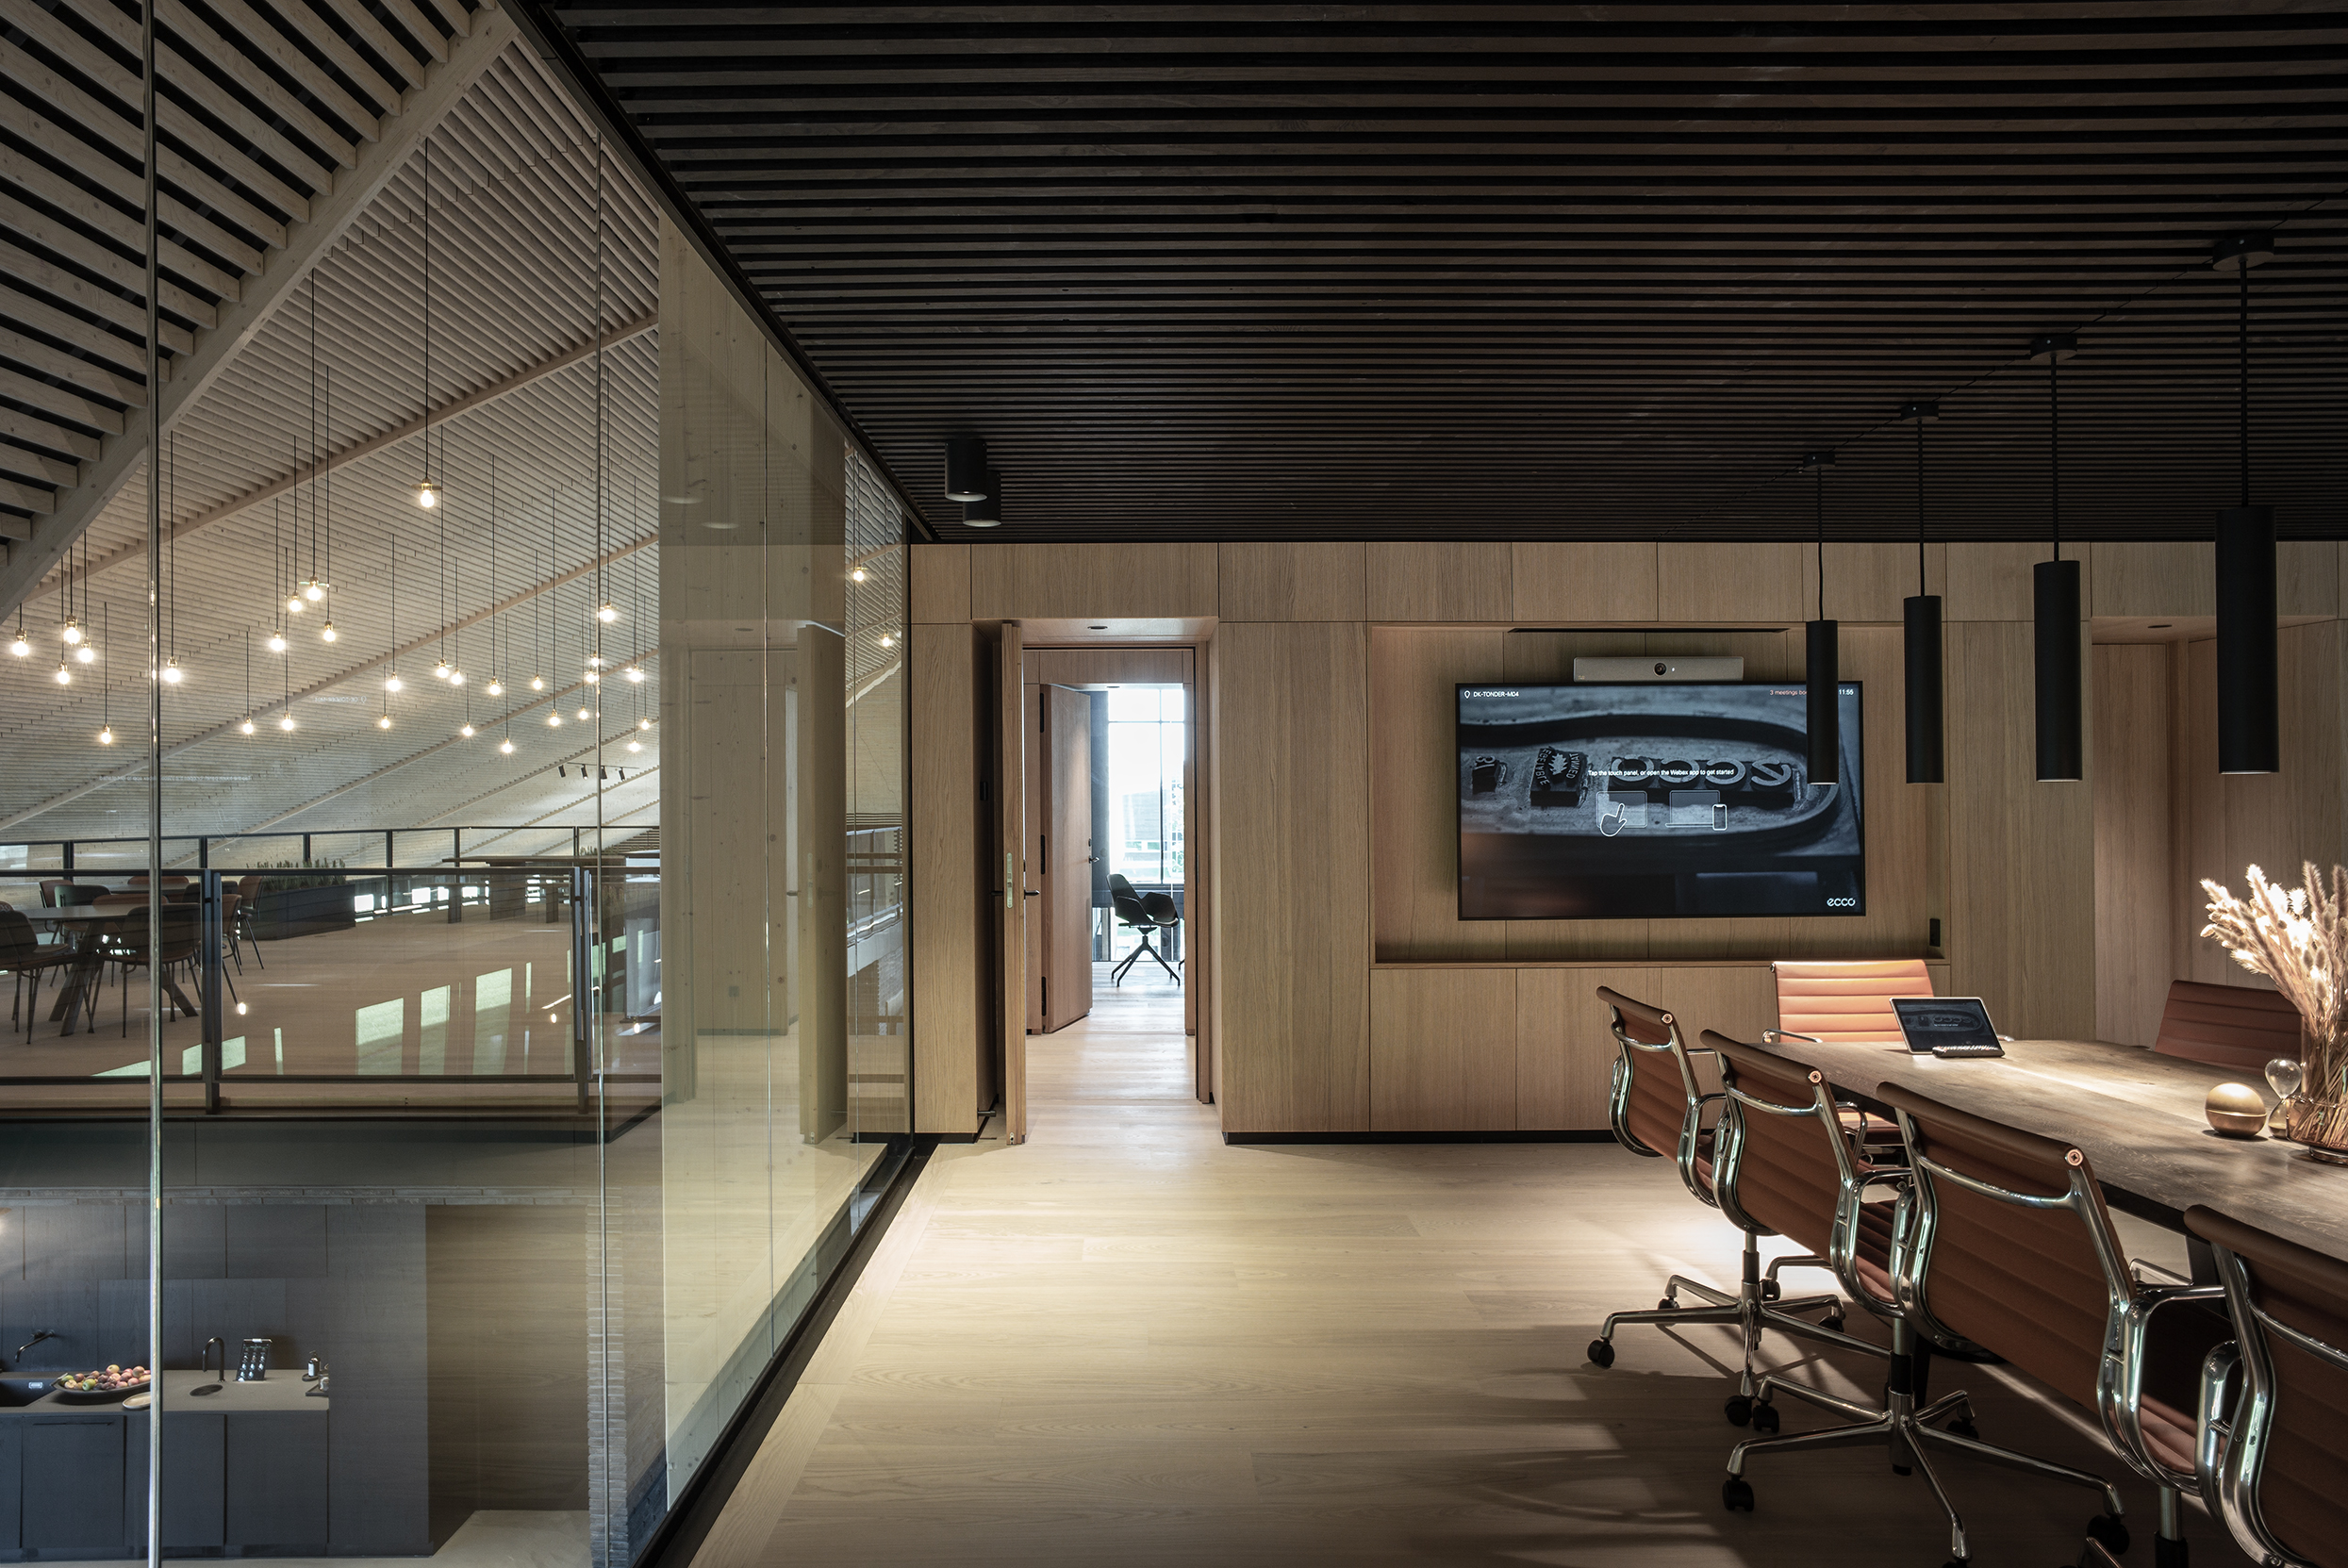 Stort mødelokale med transparente væge og sort træbeklædt loft